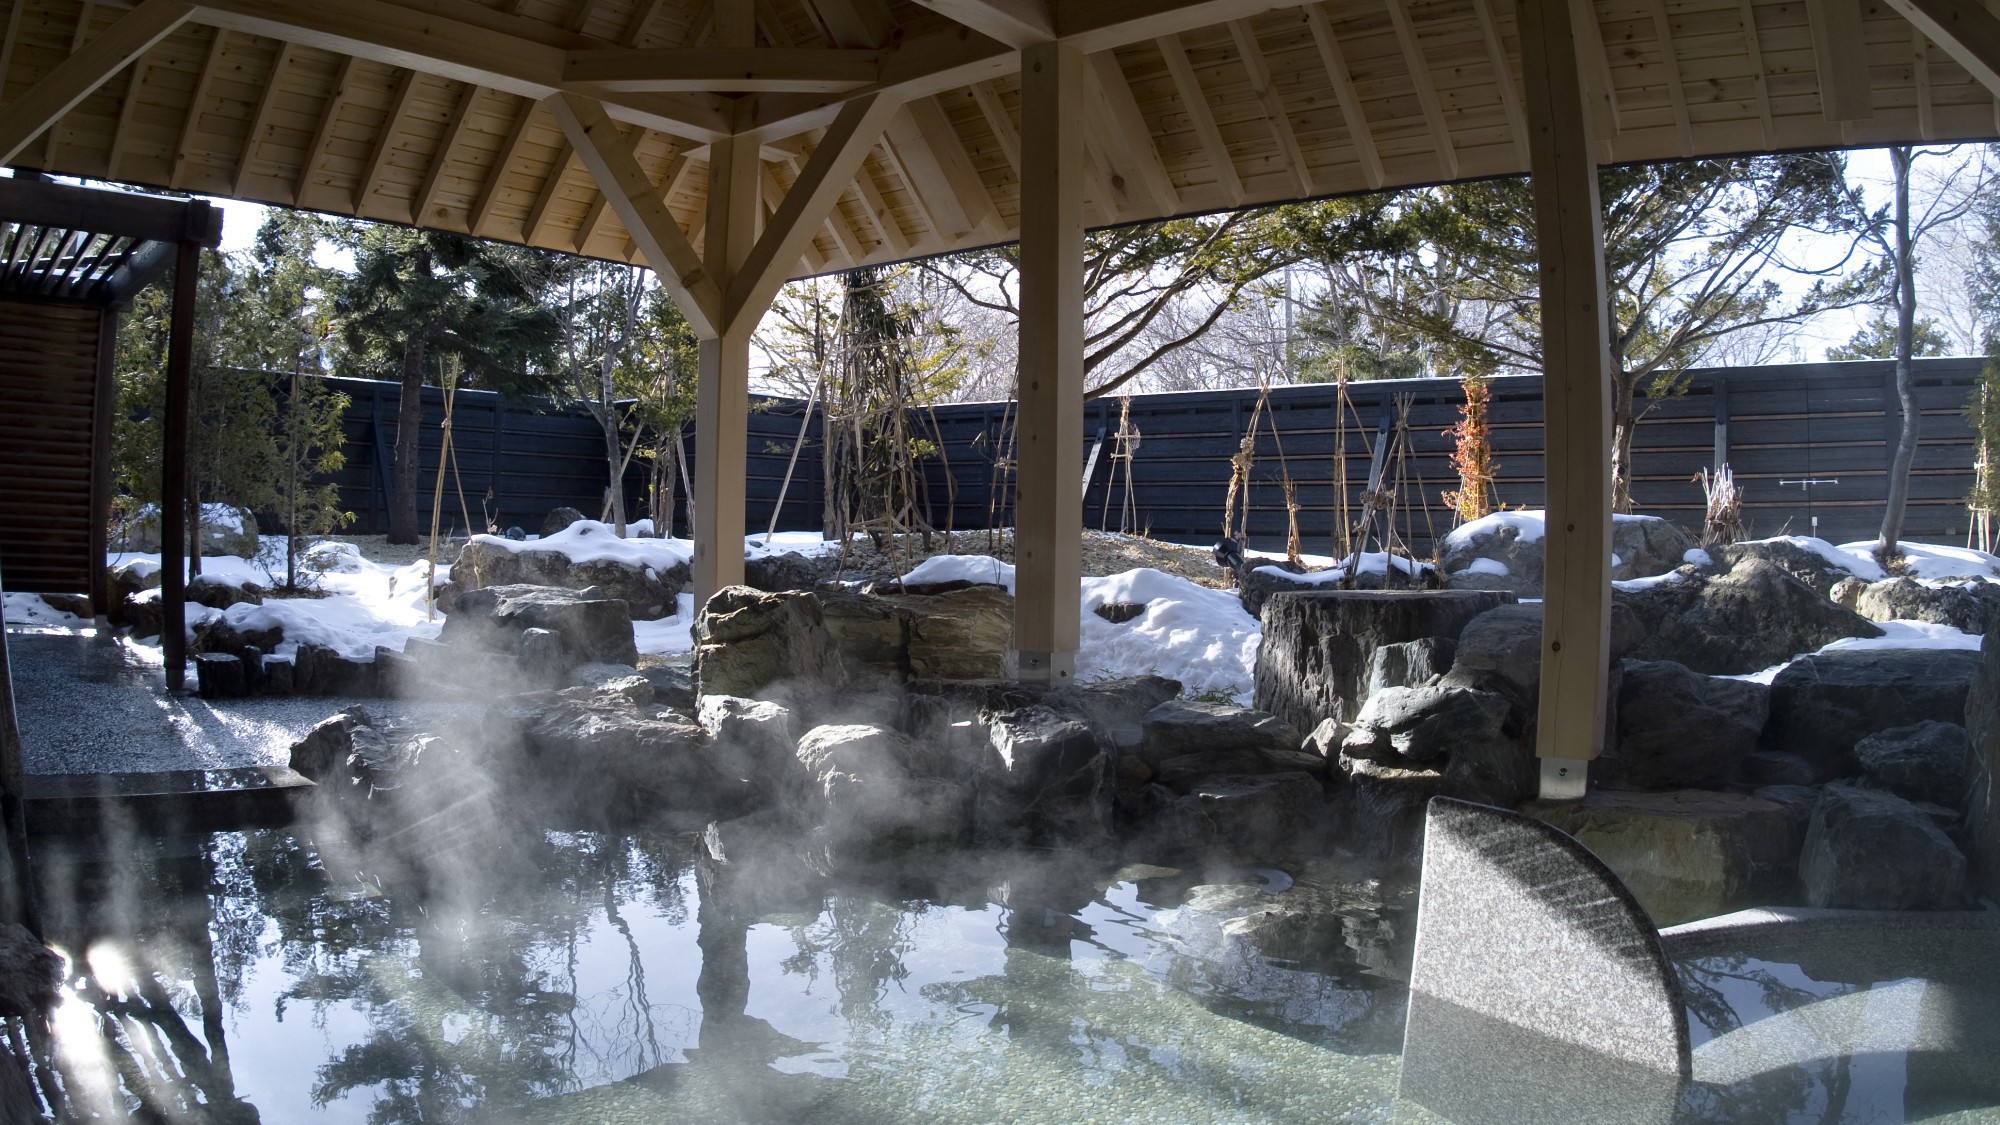 ◆冬の露天風呂／温泉は肌がしっとりすると評判で「美人の湯」と呼ばれています。